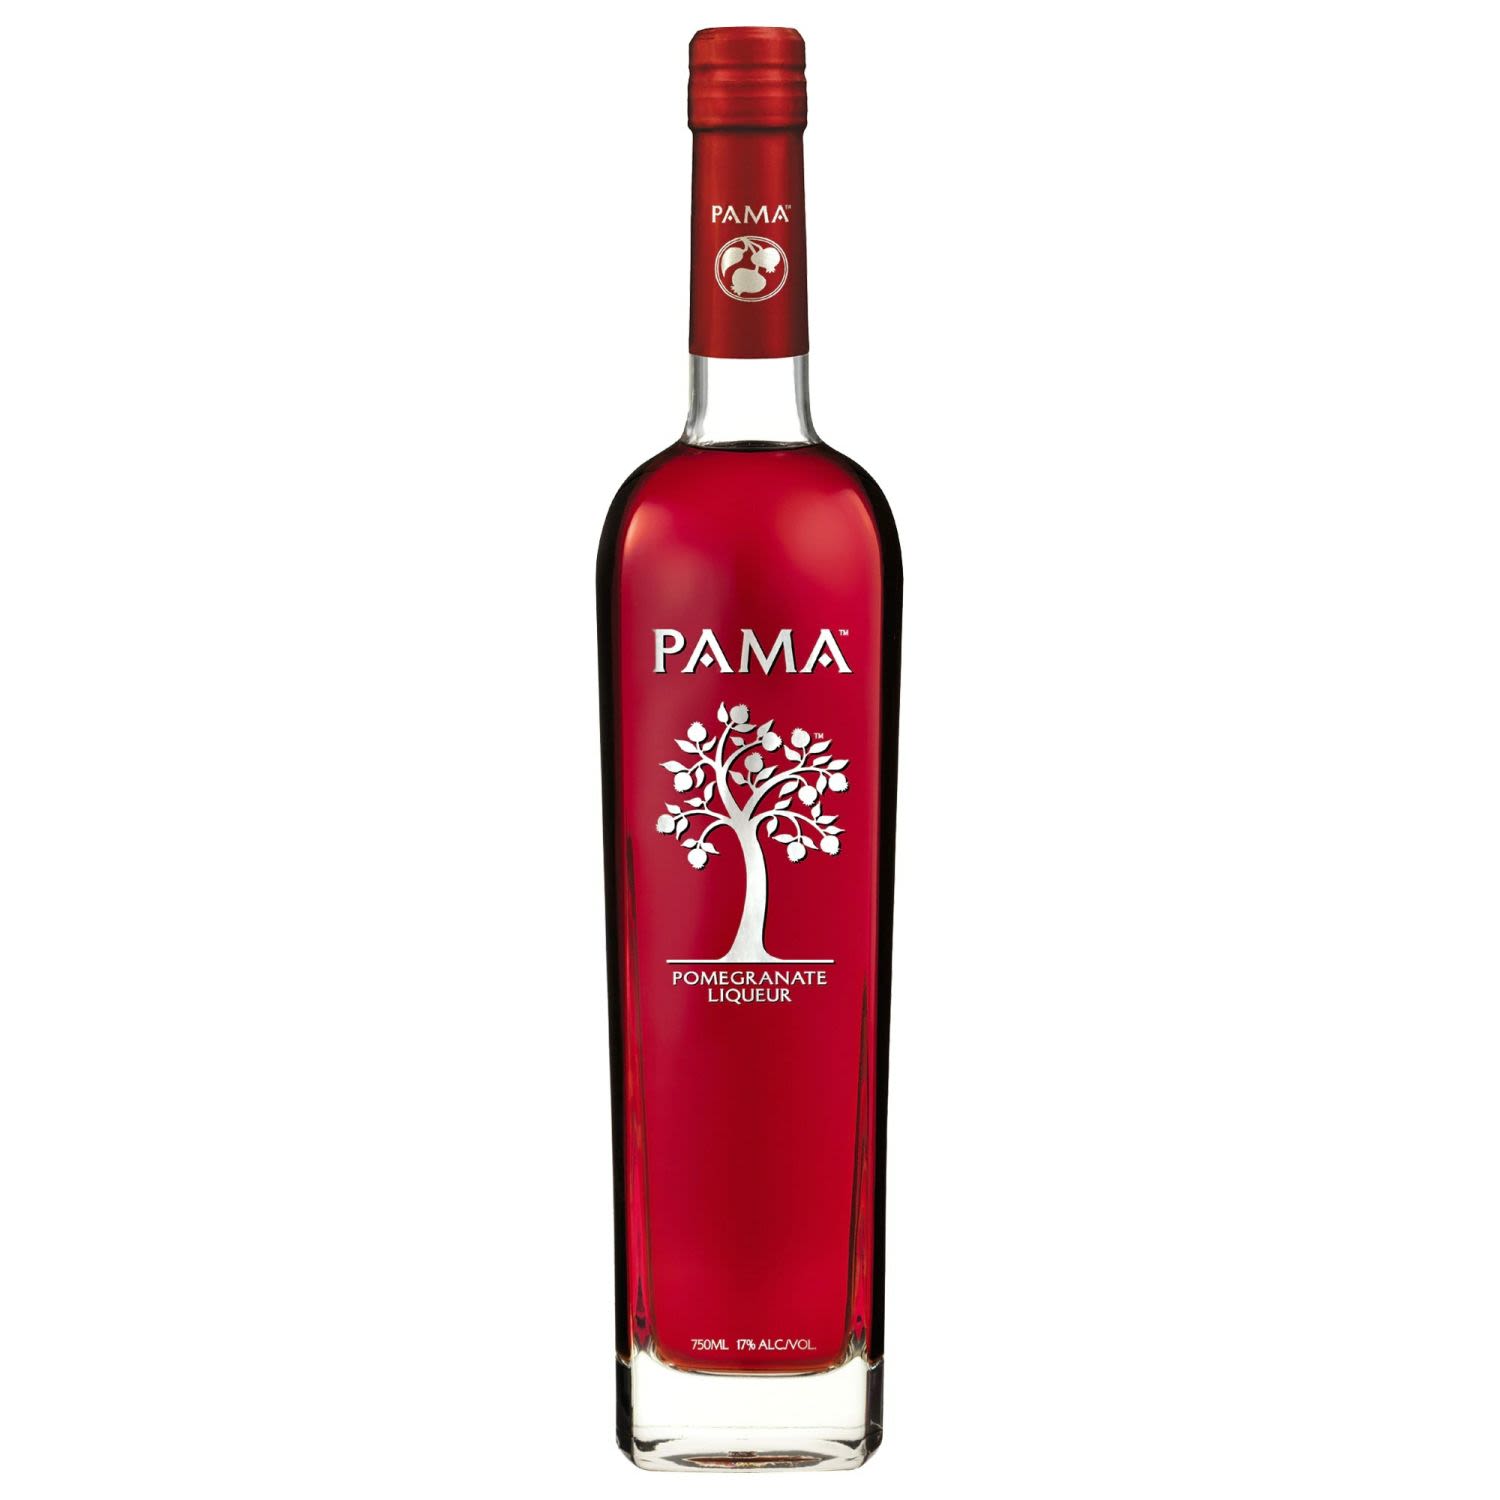 Pama Pomegranate Liqueur 750mL Bottle